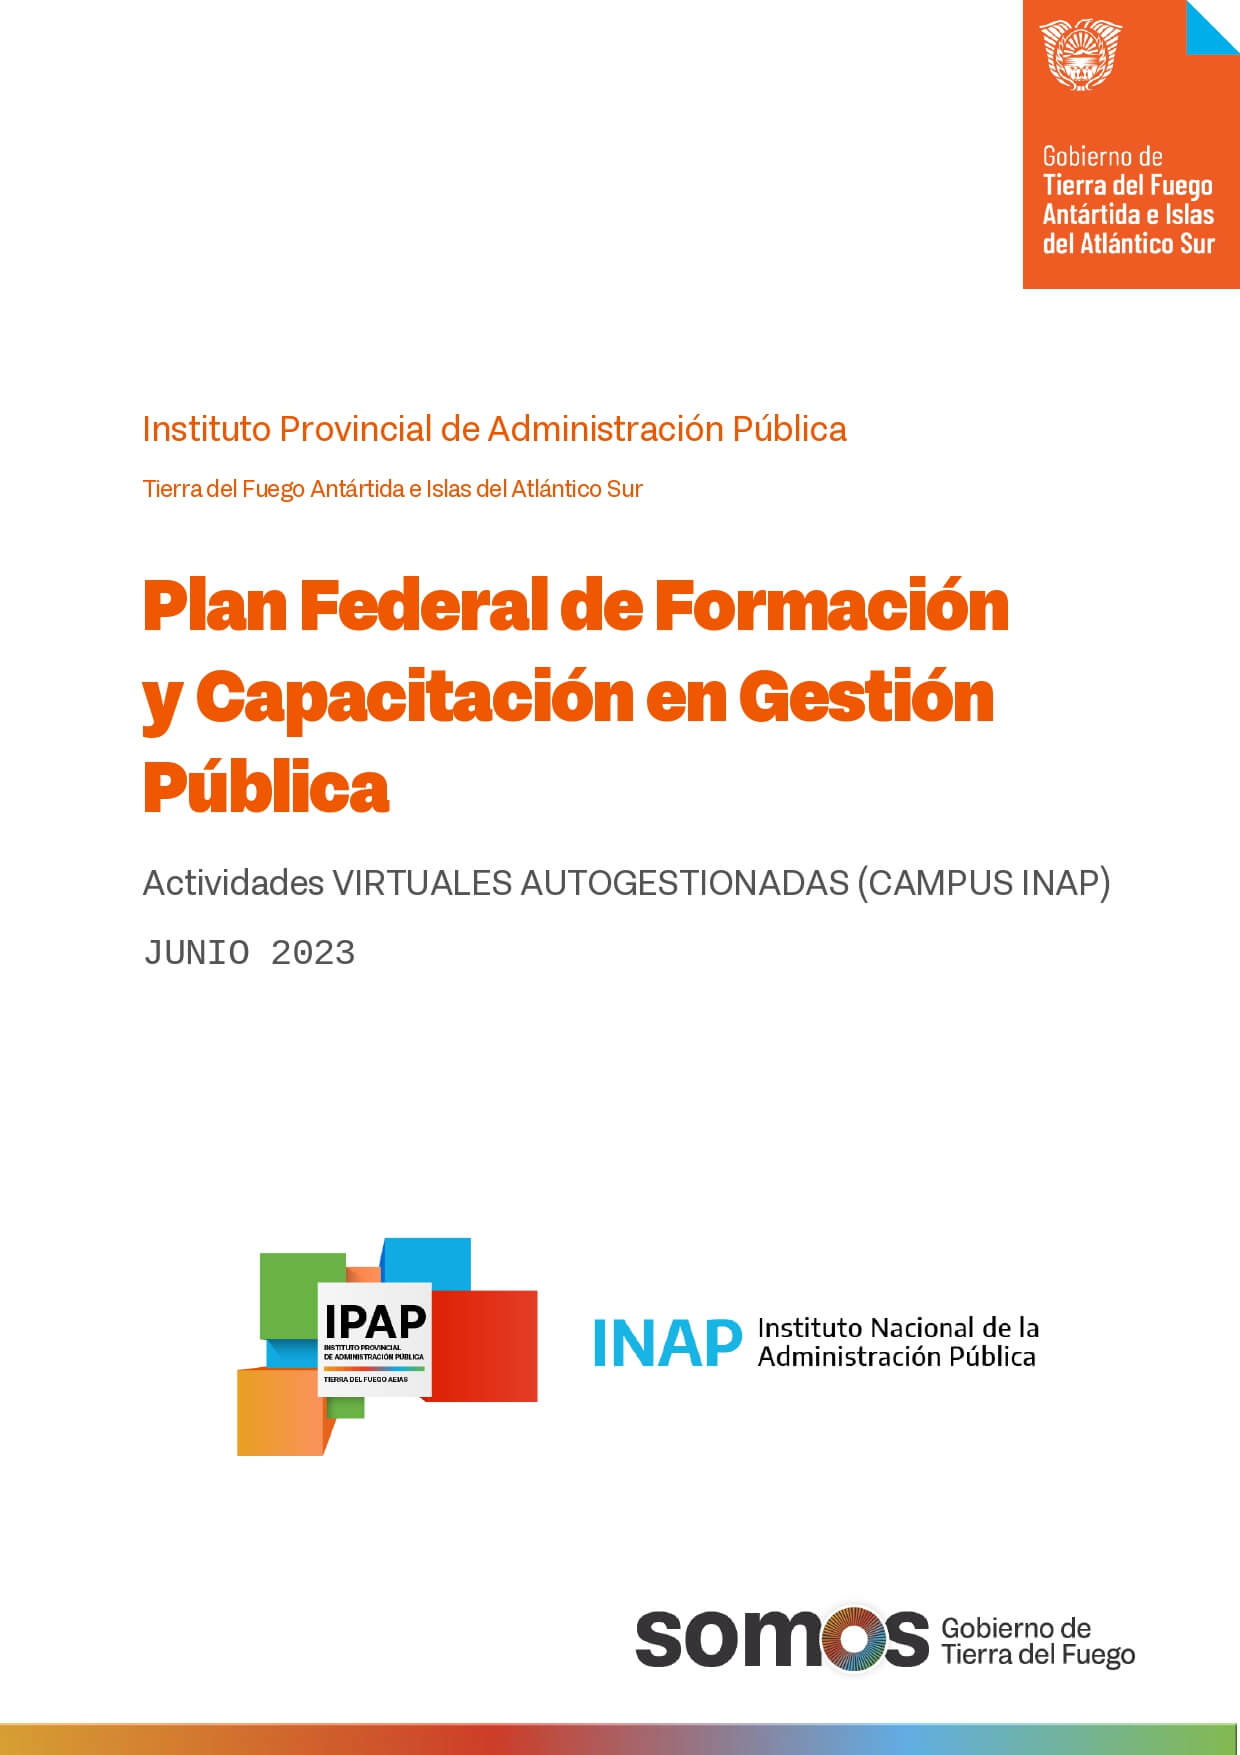 Plan Federal de Formación y Capacitación en Gestión Pública – Actividades de Junio de 2023